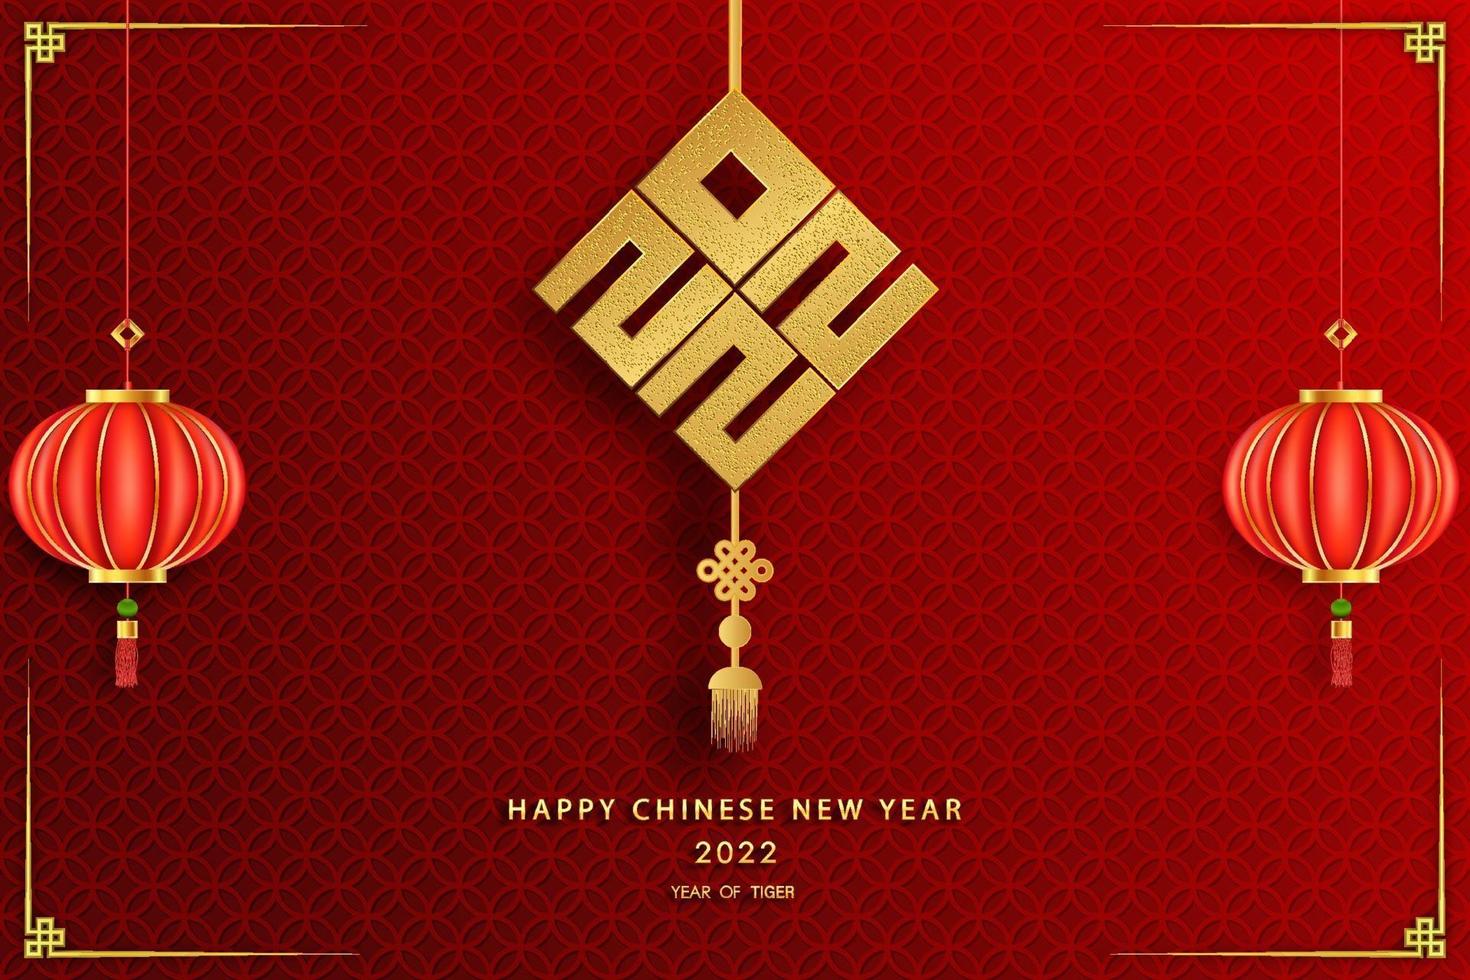 felice anno nuovo cinese 2022 anno della tigre, fiori e elementi asiatici con stile artigianale sullo sfondo. vettore